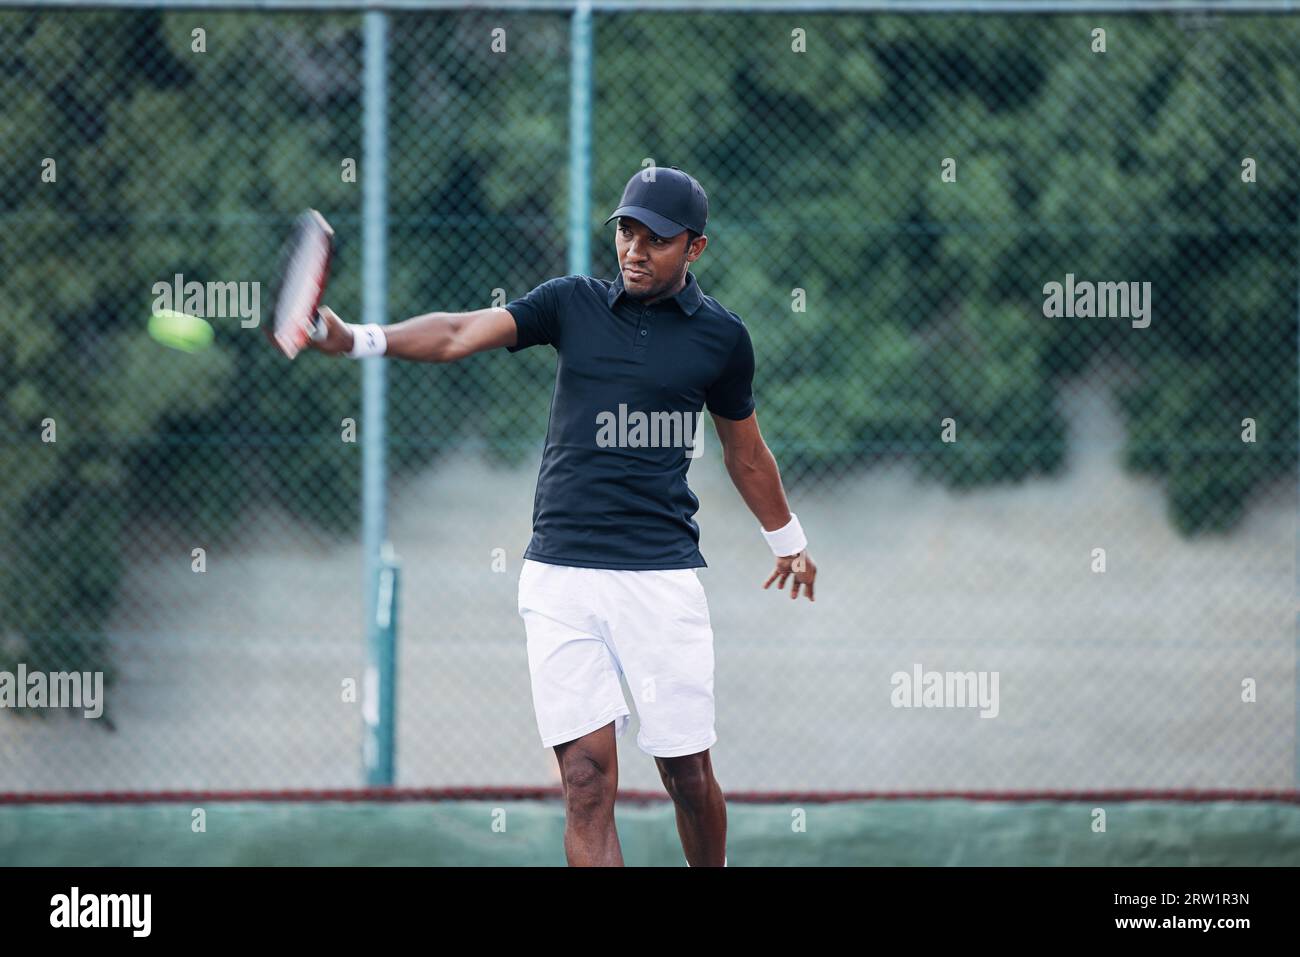 Un tennista professionista che colpisce una palla durante una partita Foto Stock